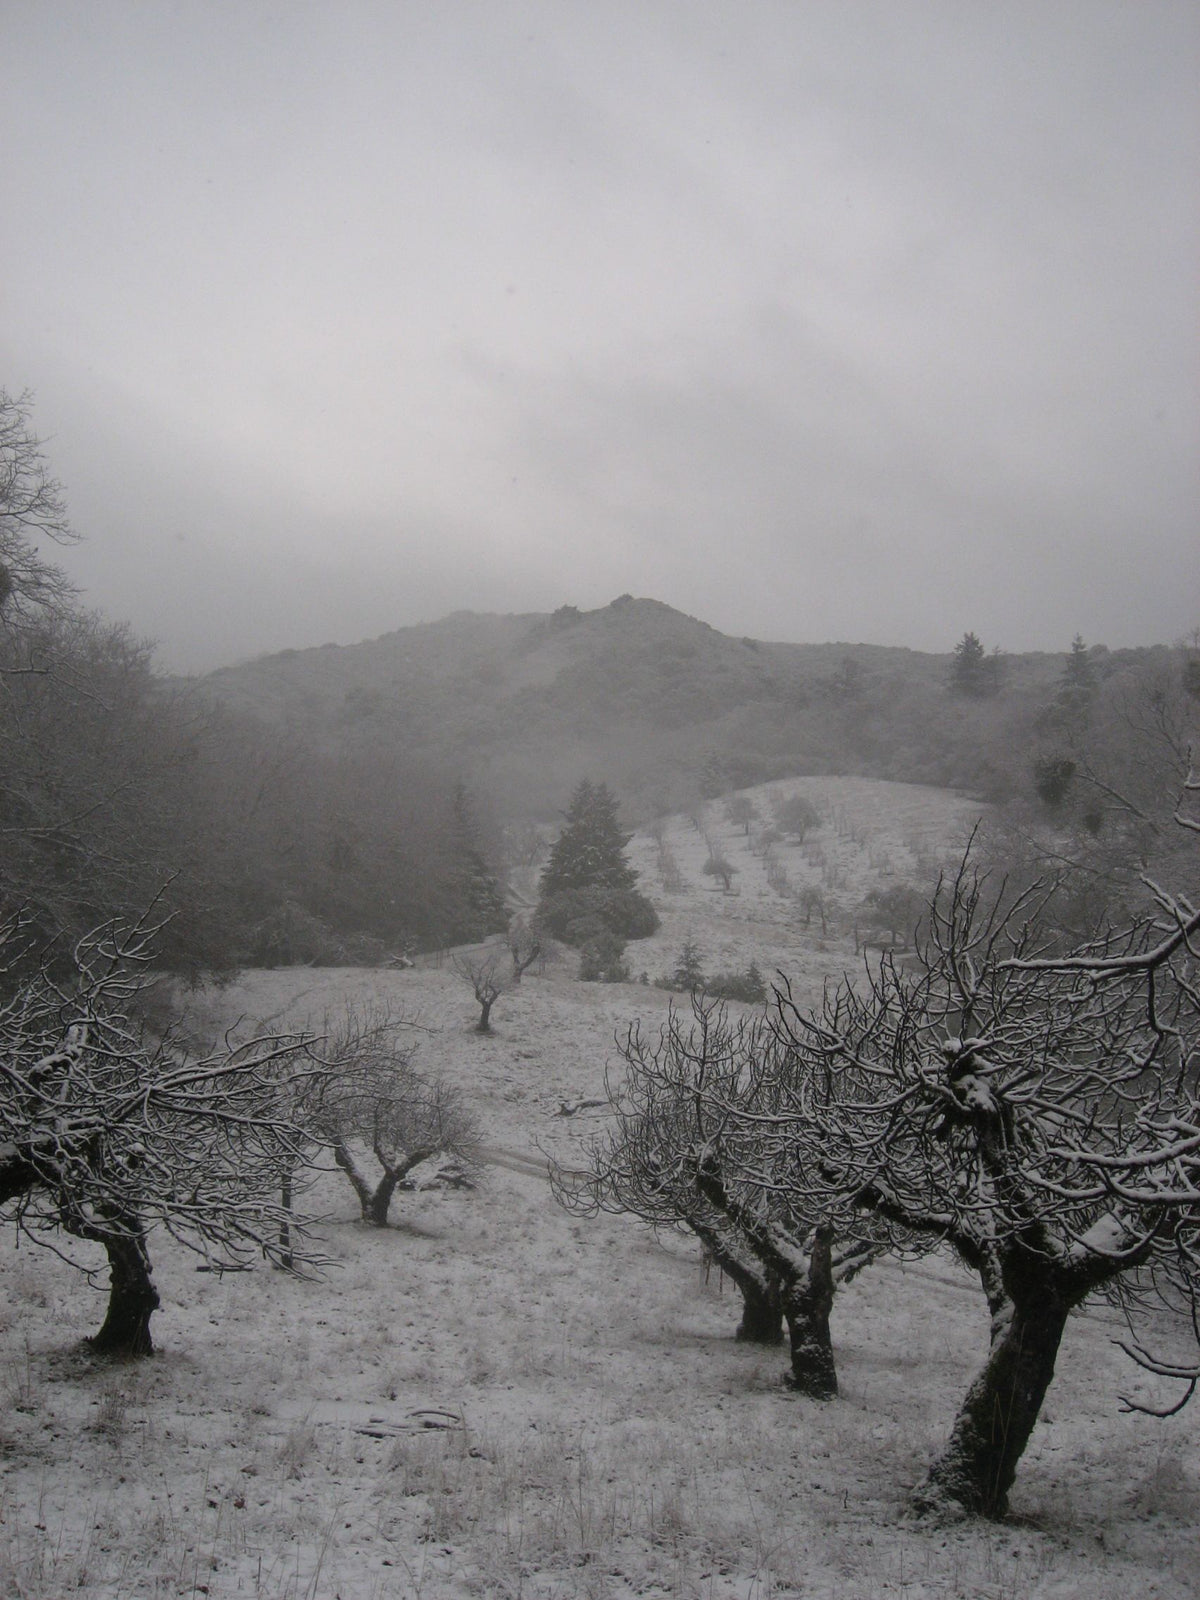 &lt;I&gt;Orchard in Snow&lt;/I&gt;&lt;br&gt;Mendocino, California, 2010&lt;br&gt;&lt;br&gt;GC0016